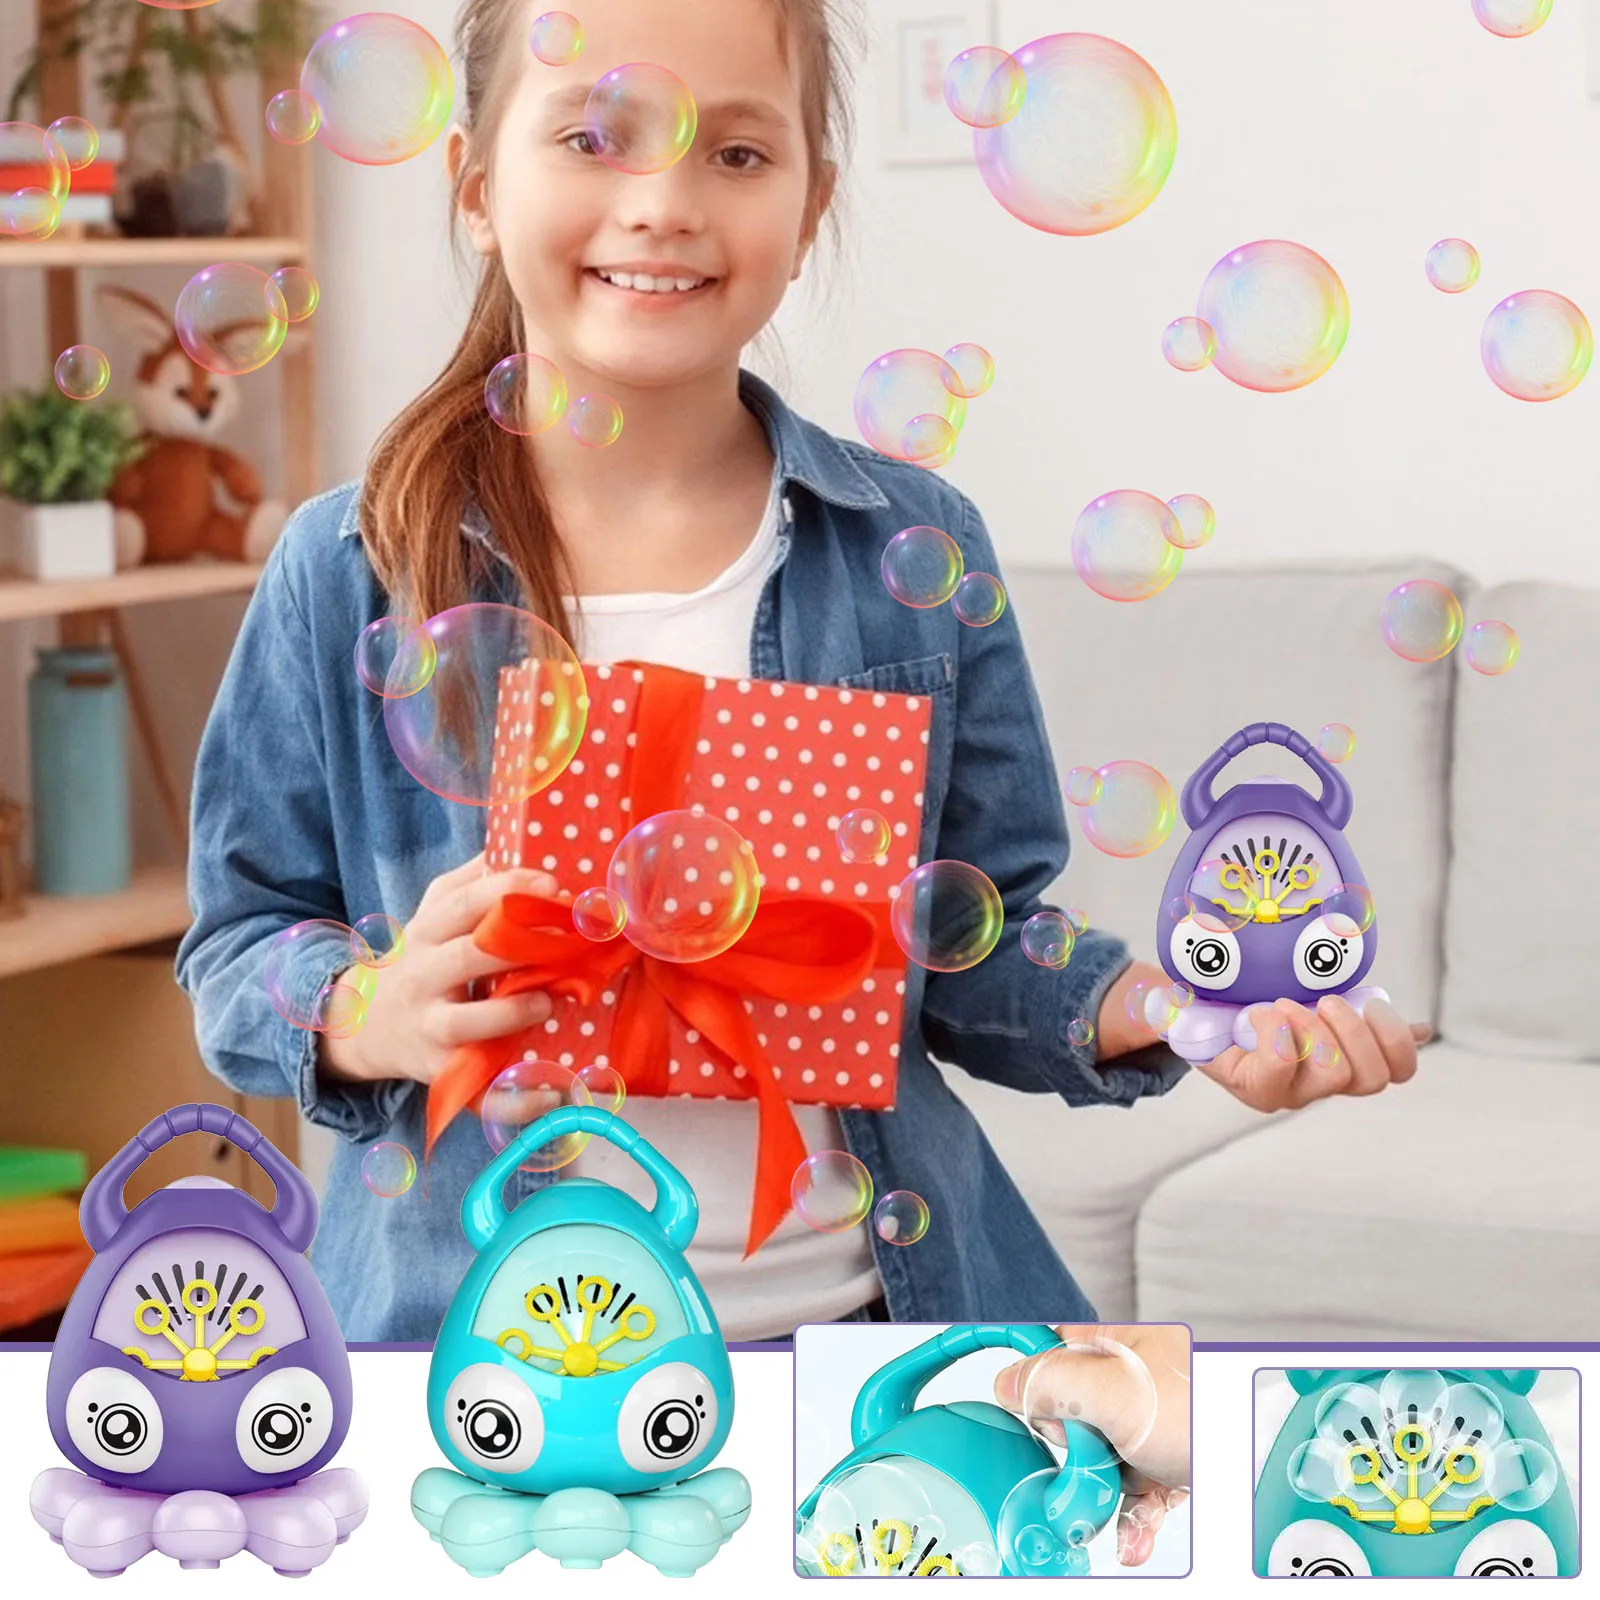 

Пузырьковая машина полностью автоматический дующий пузыри Портативный Bubble Maker вечерние для детей 50 мл летняя уличная игрушка для детей, опт...